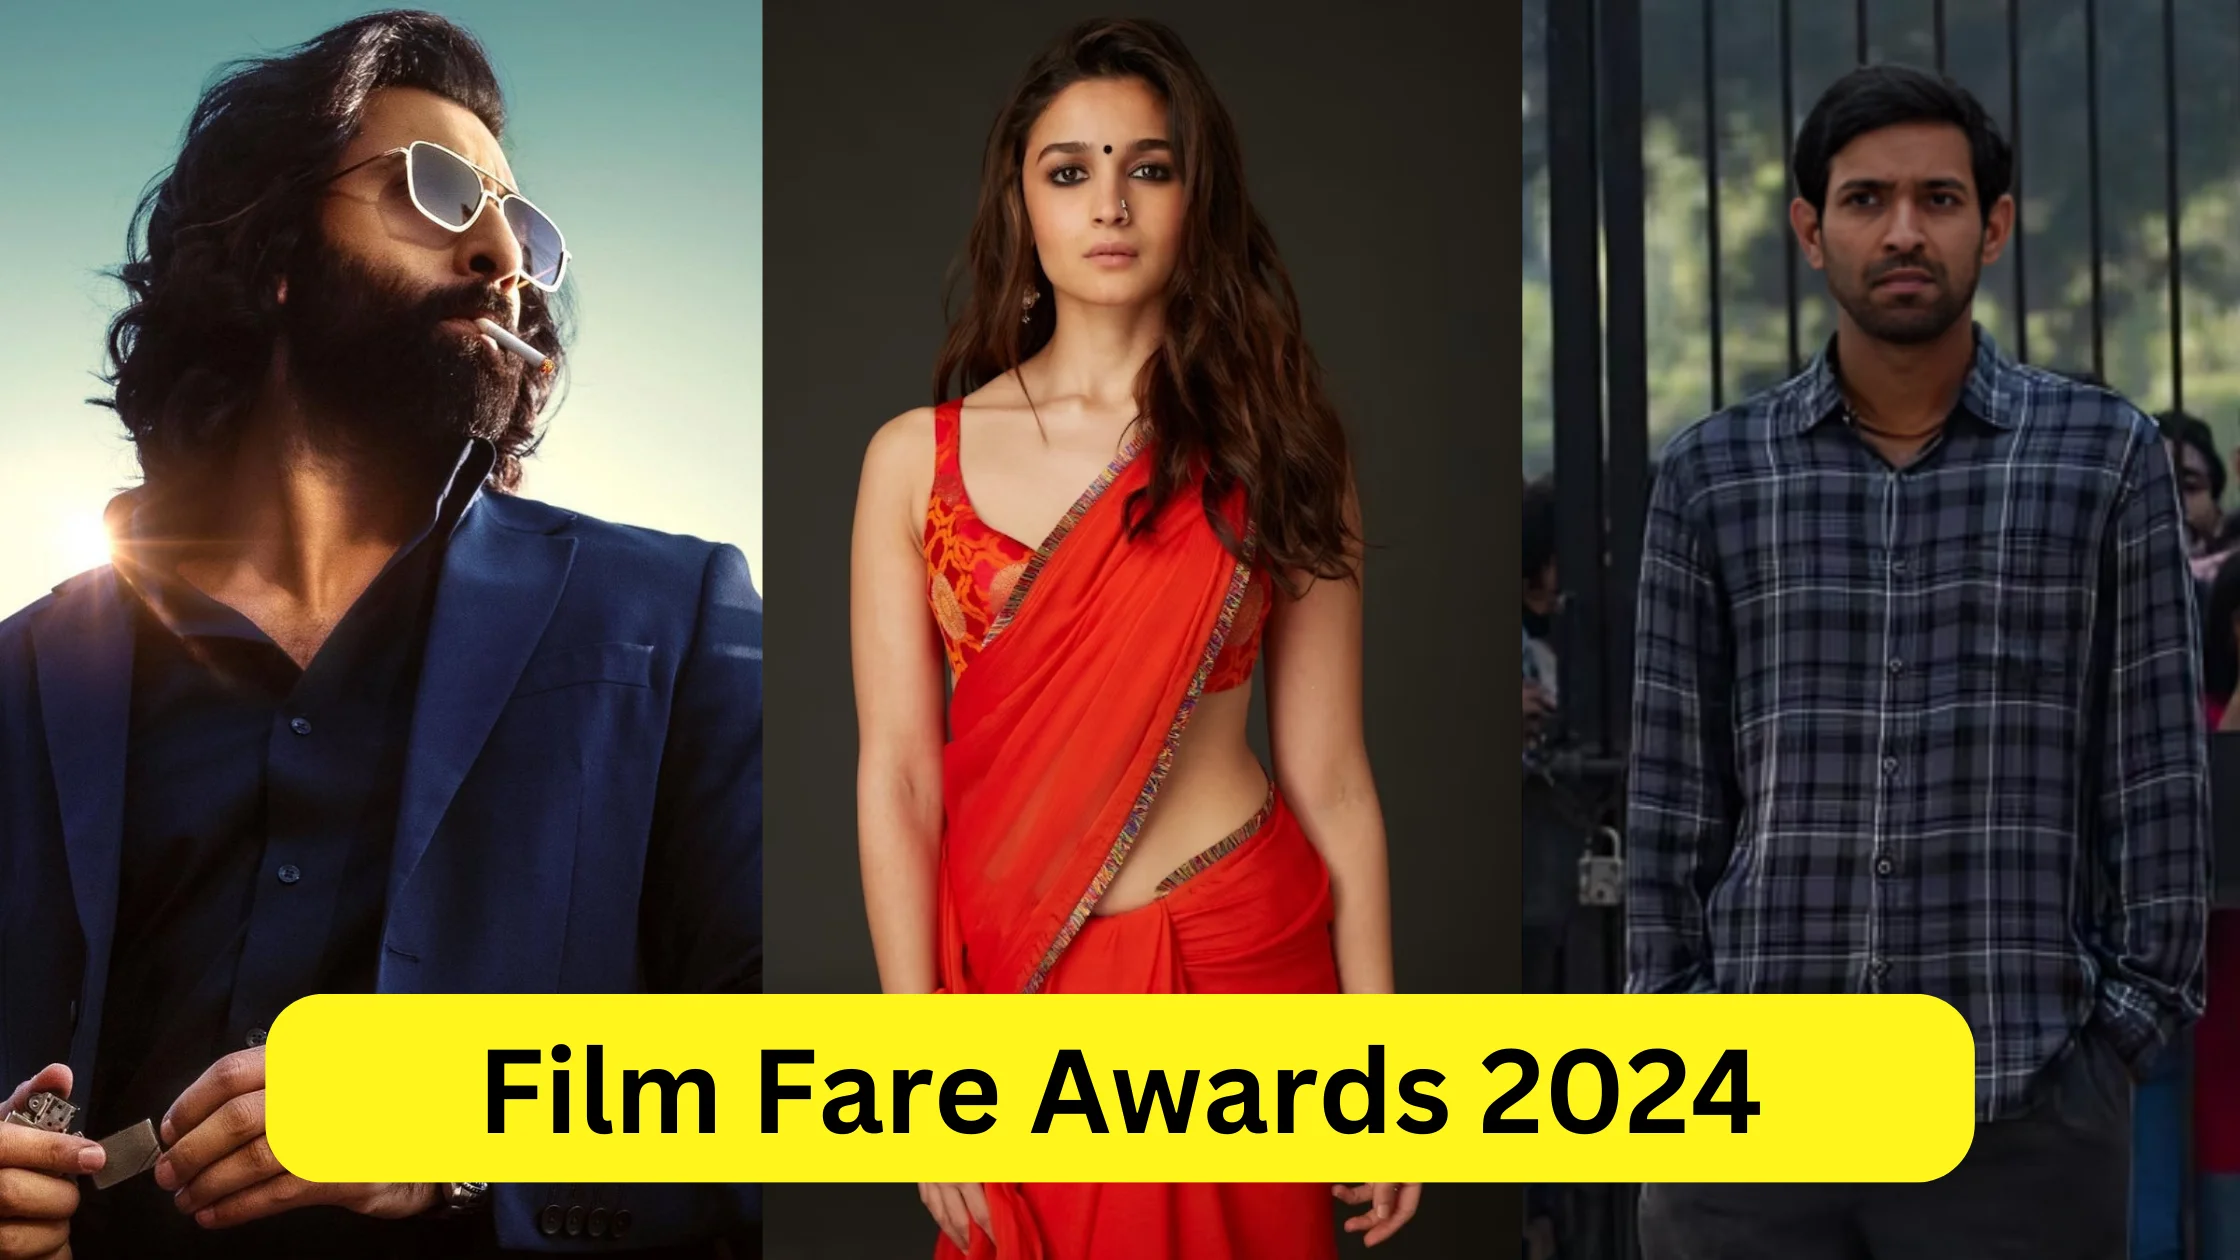 Film Fare Awards 2024